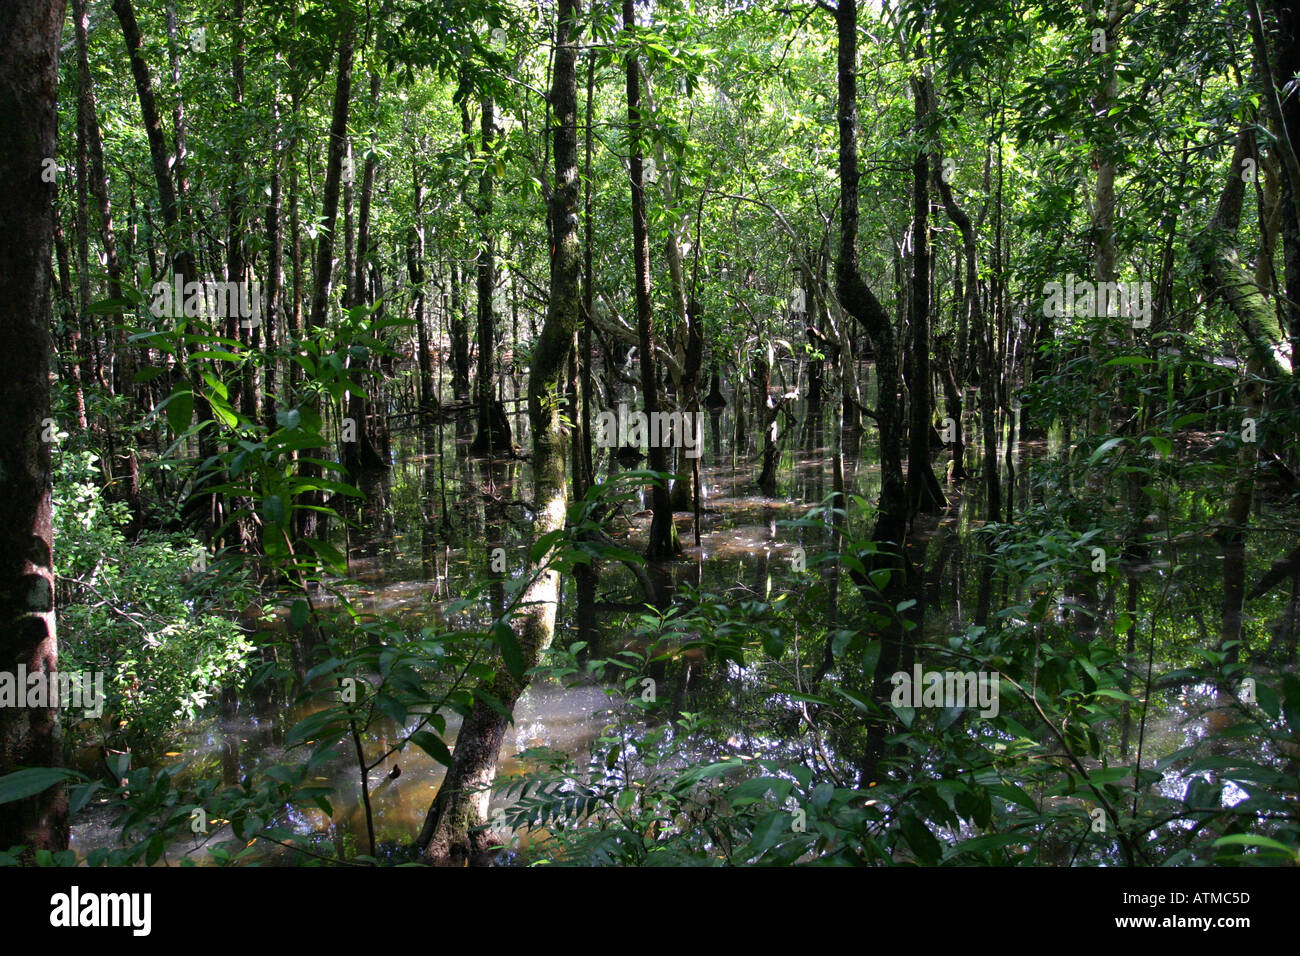 Plantes vertes luxuriantes contraste avec de l'eau brune dans cette mangrove tropicale de Daintree Cape Tribulation Australie Banque D'Images